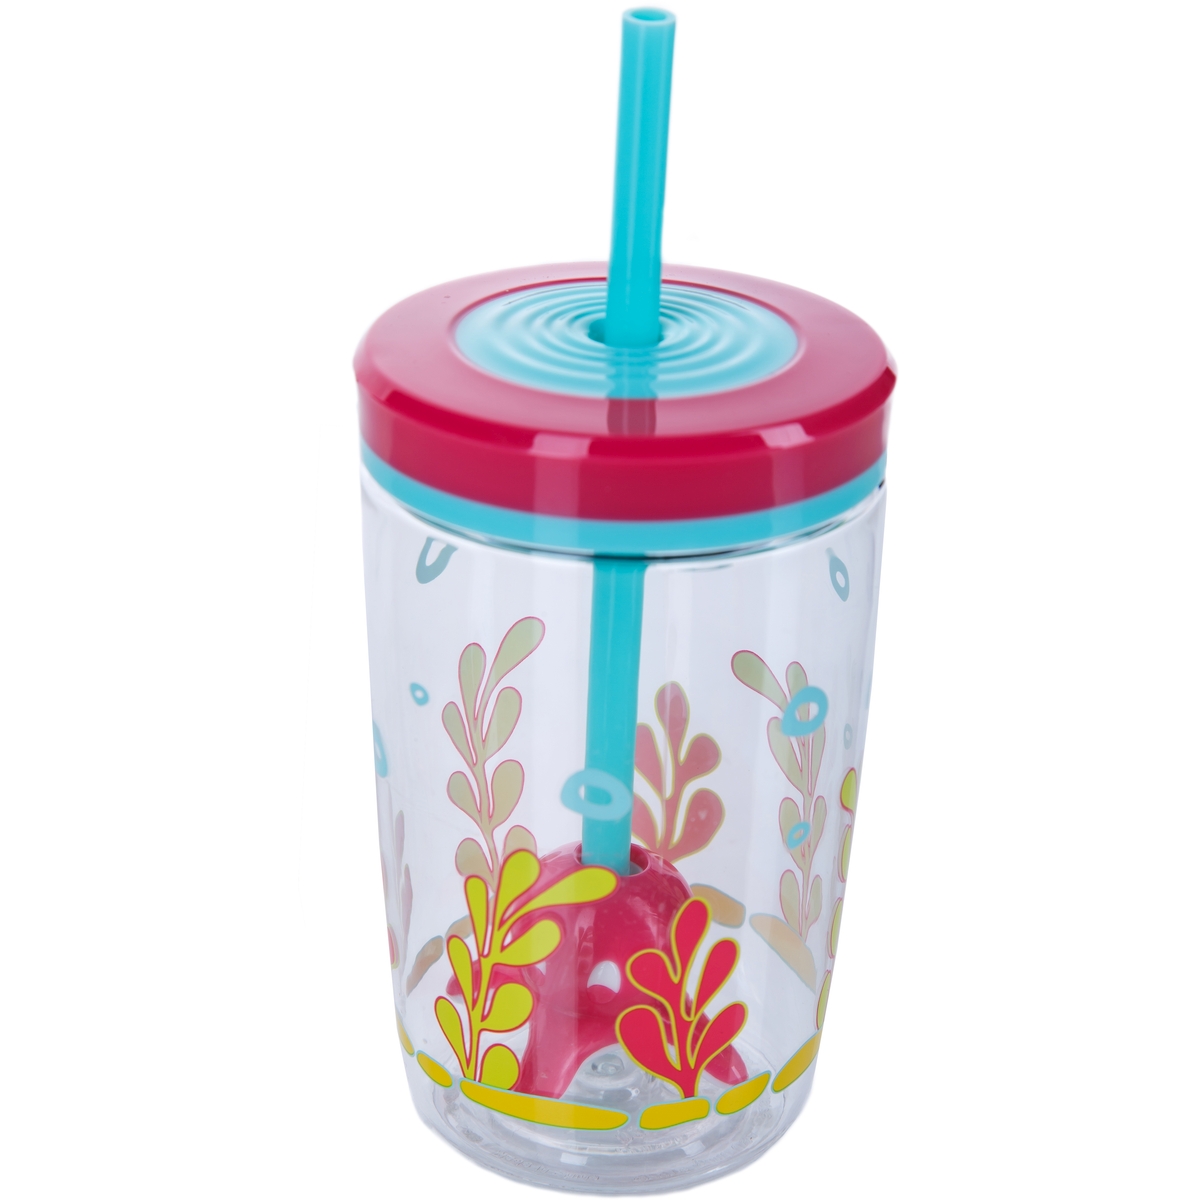 Детский стакан с соломинкой Floating straw tumbler Squid, 0.47 л (Contigo CONTIGO0773)